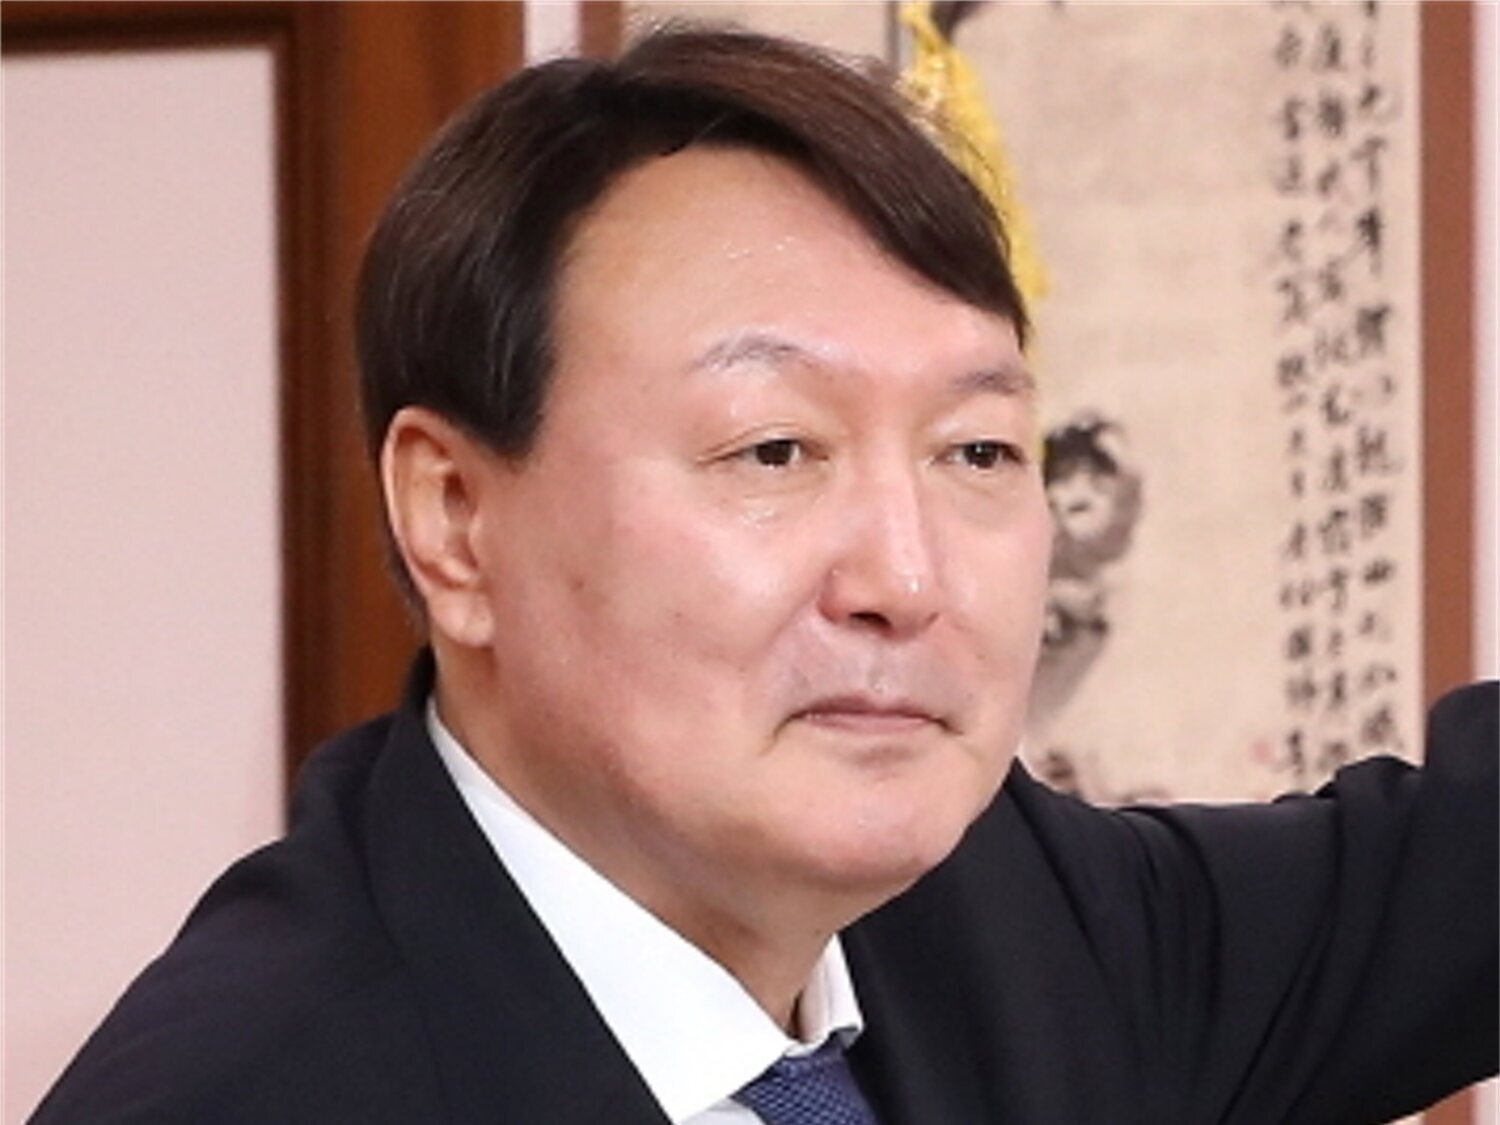 El próximo presidente de Corea del Sur, el derechista Yoon Suk-yeol, defiende trabajar 120 horas semanales